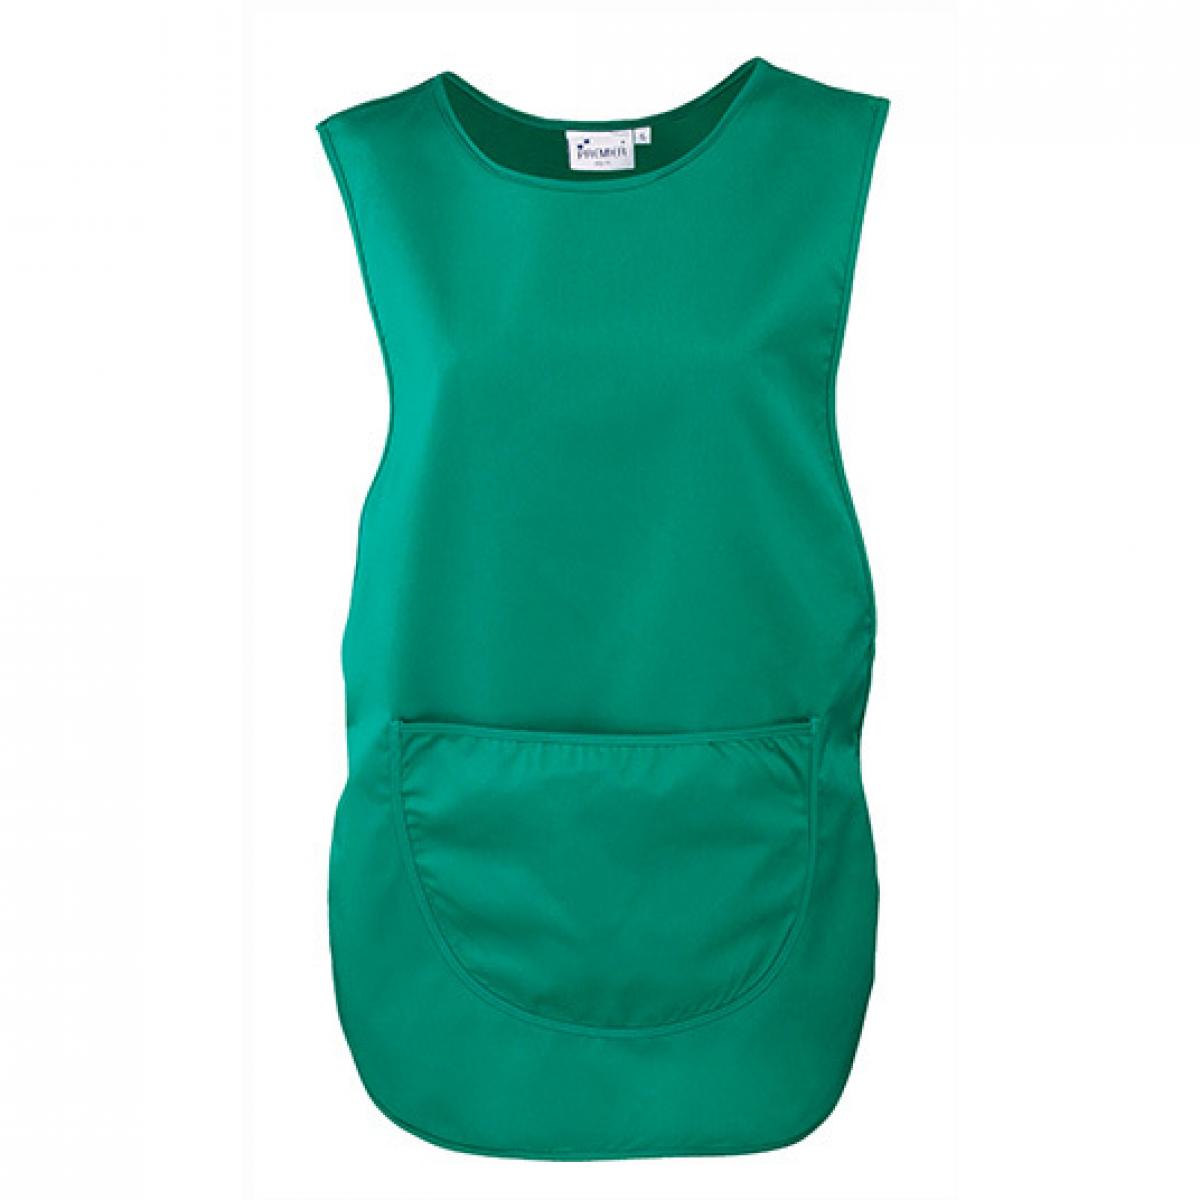 Hersteller: Premier Workwear Herstellernummer: PR171 Artikelbezeichnung: Women`s Pocket Tabard - Waschbar bis 60 °C Farbe: Emerald (ca. Pantone 341)